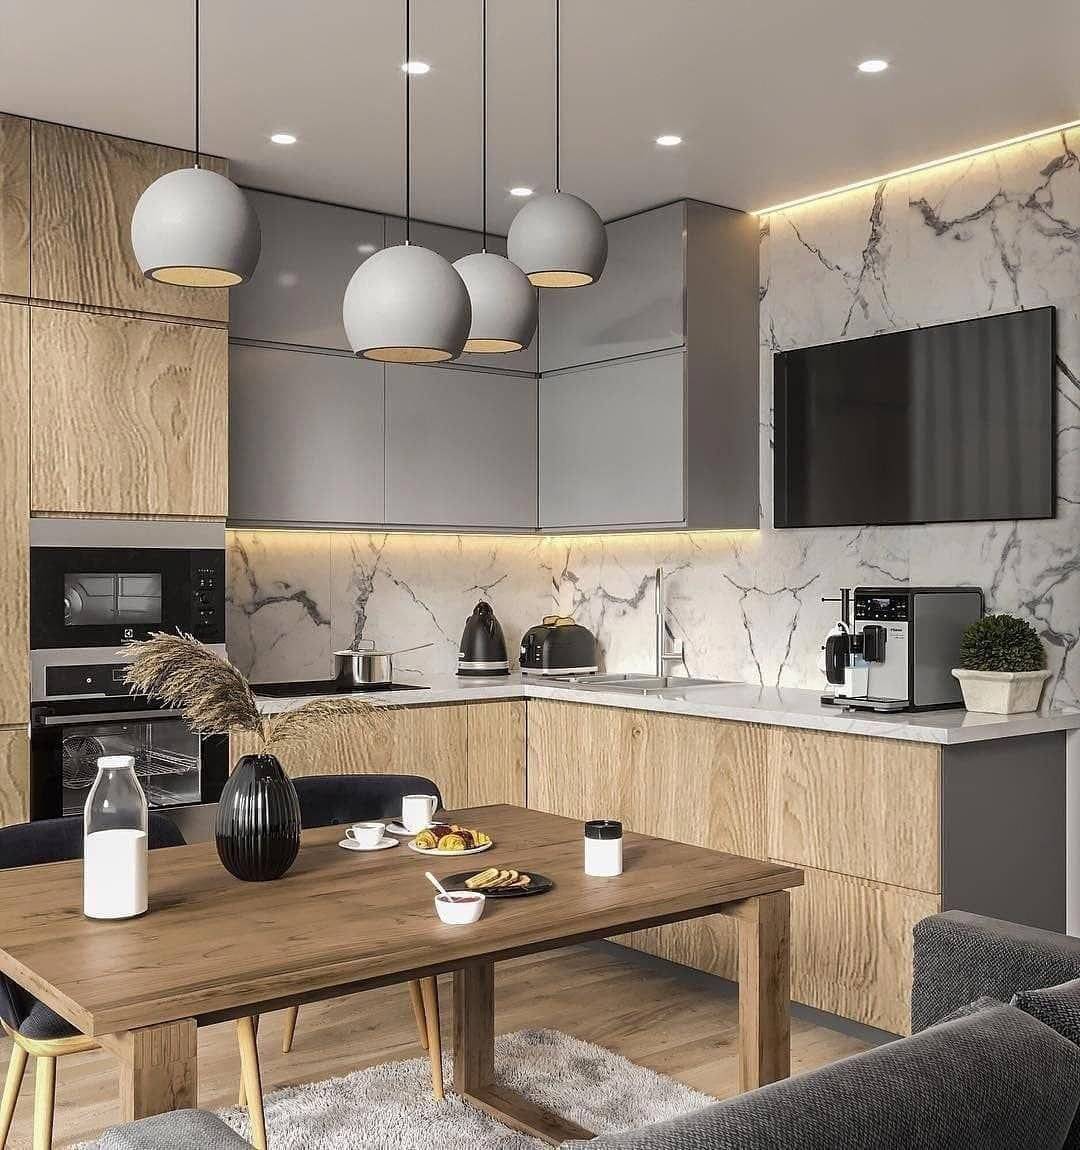 Самые красивые кухни в мире на 2019 год: 10 фото современных стильных гарнитуров в интерьере квартиры